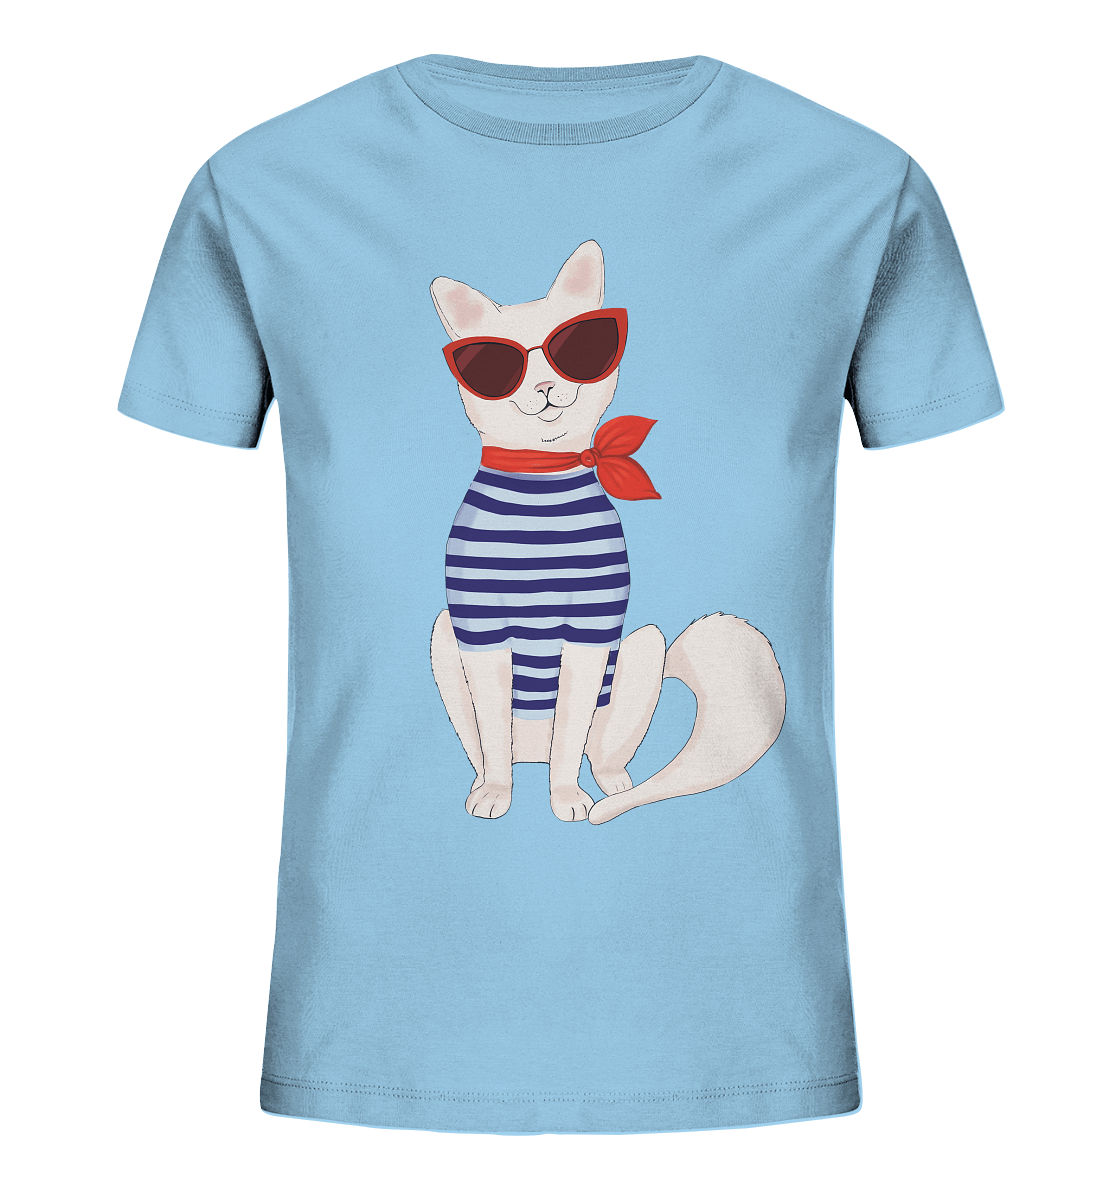 Katze Cartoon T-Shirt Mädchen Fashion Katze Kinder T-Shirt in baby blau